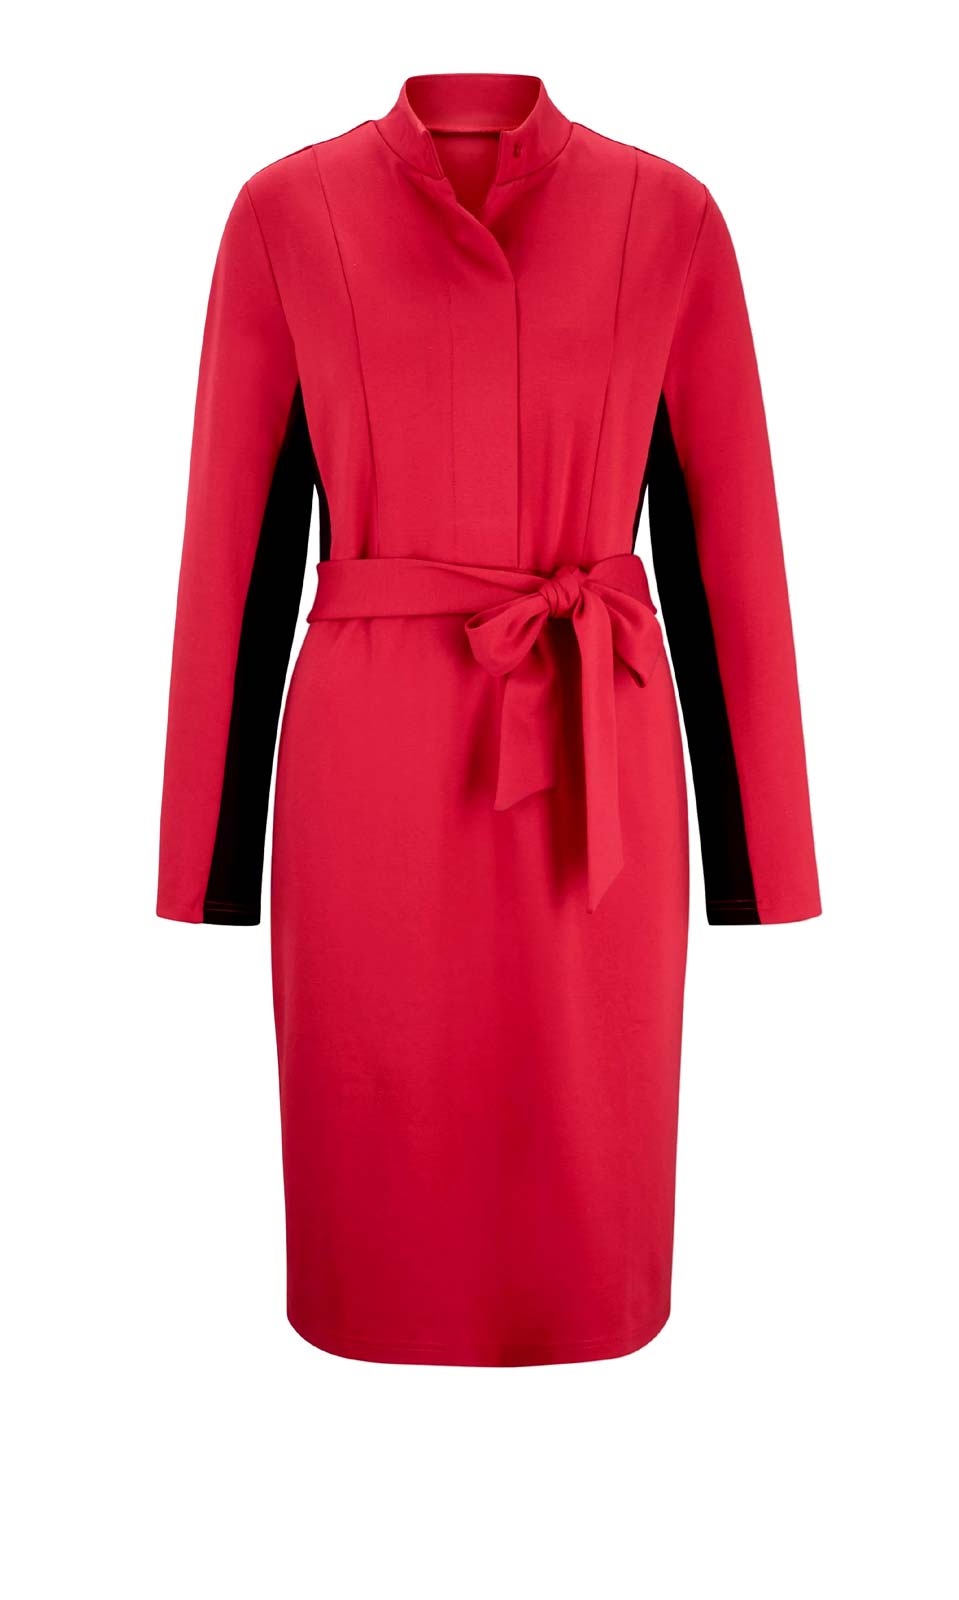 Damen Jerseykleid mit Stoffgürtel rot Missforty